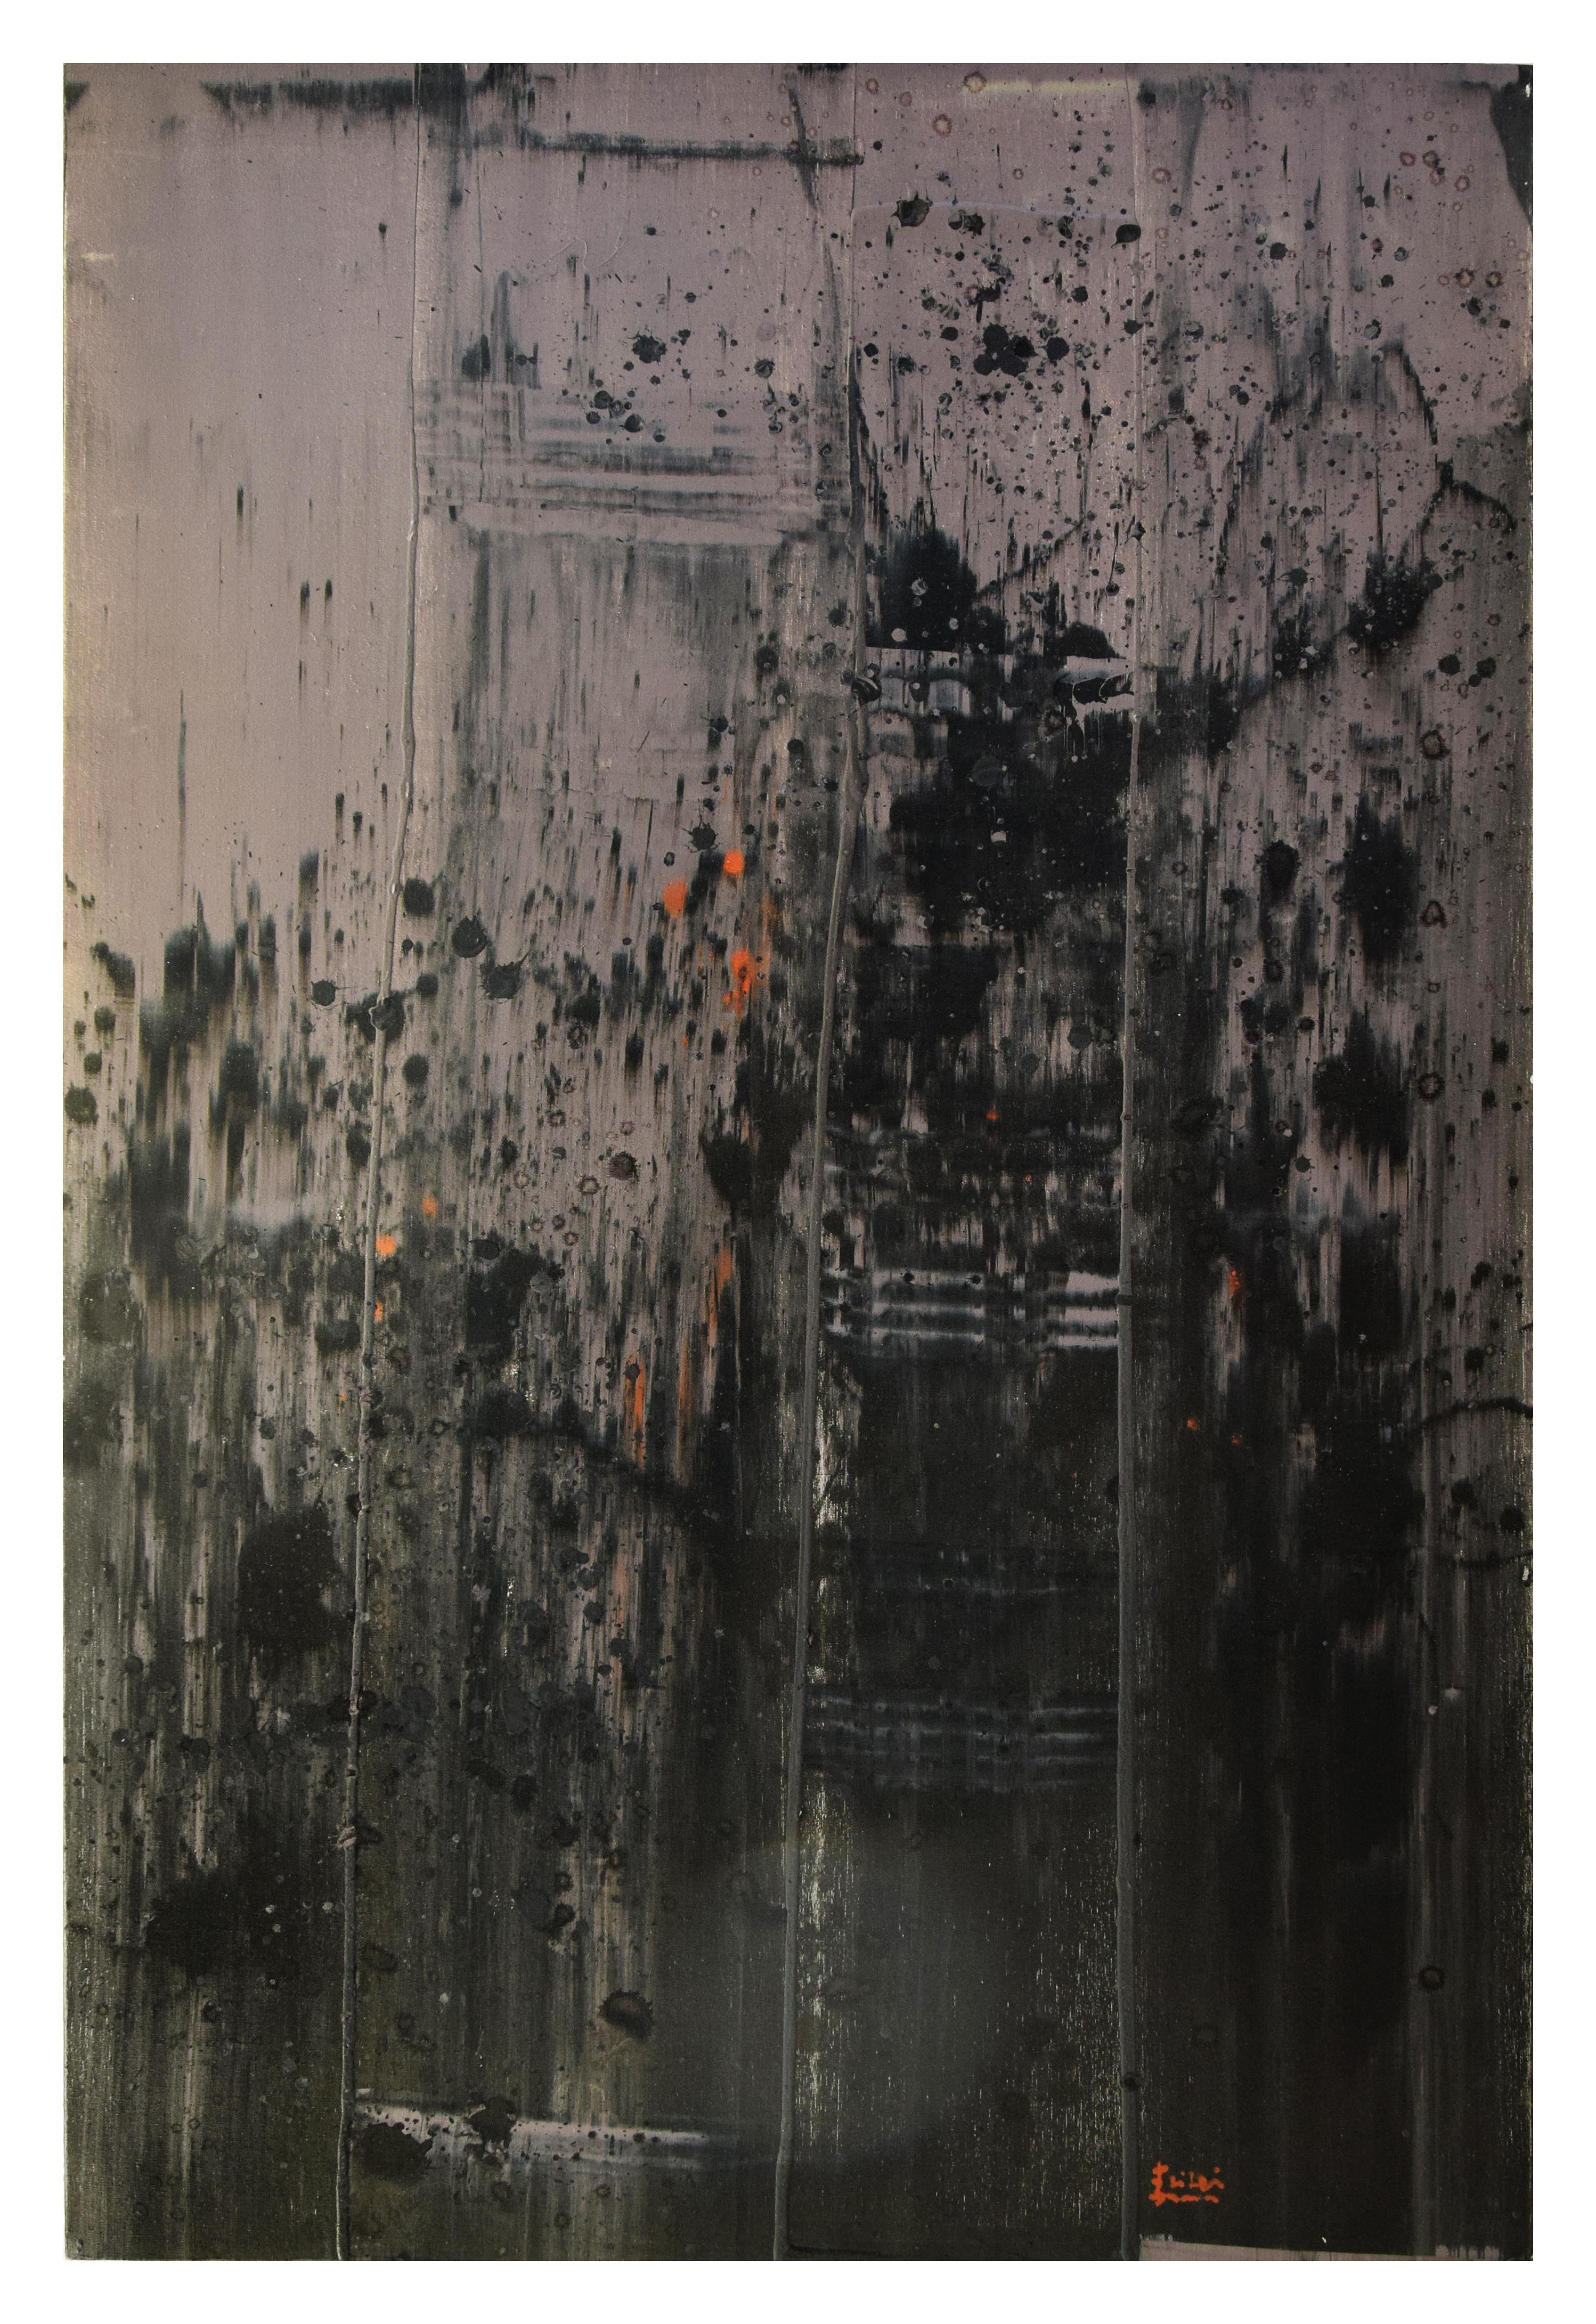 Grigio Naturale 05 ist ein hypnotisches abstraktes Gemälde des zeitgenössischen Künstlers Li Lei aus dem Jahr 2007.

Dieses vertikale Original-Kunstwerk stellt eine abstrakte Komposition in verschiedenen Grautönen dar. Die Pinselführung ist